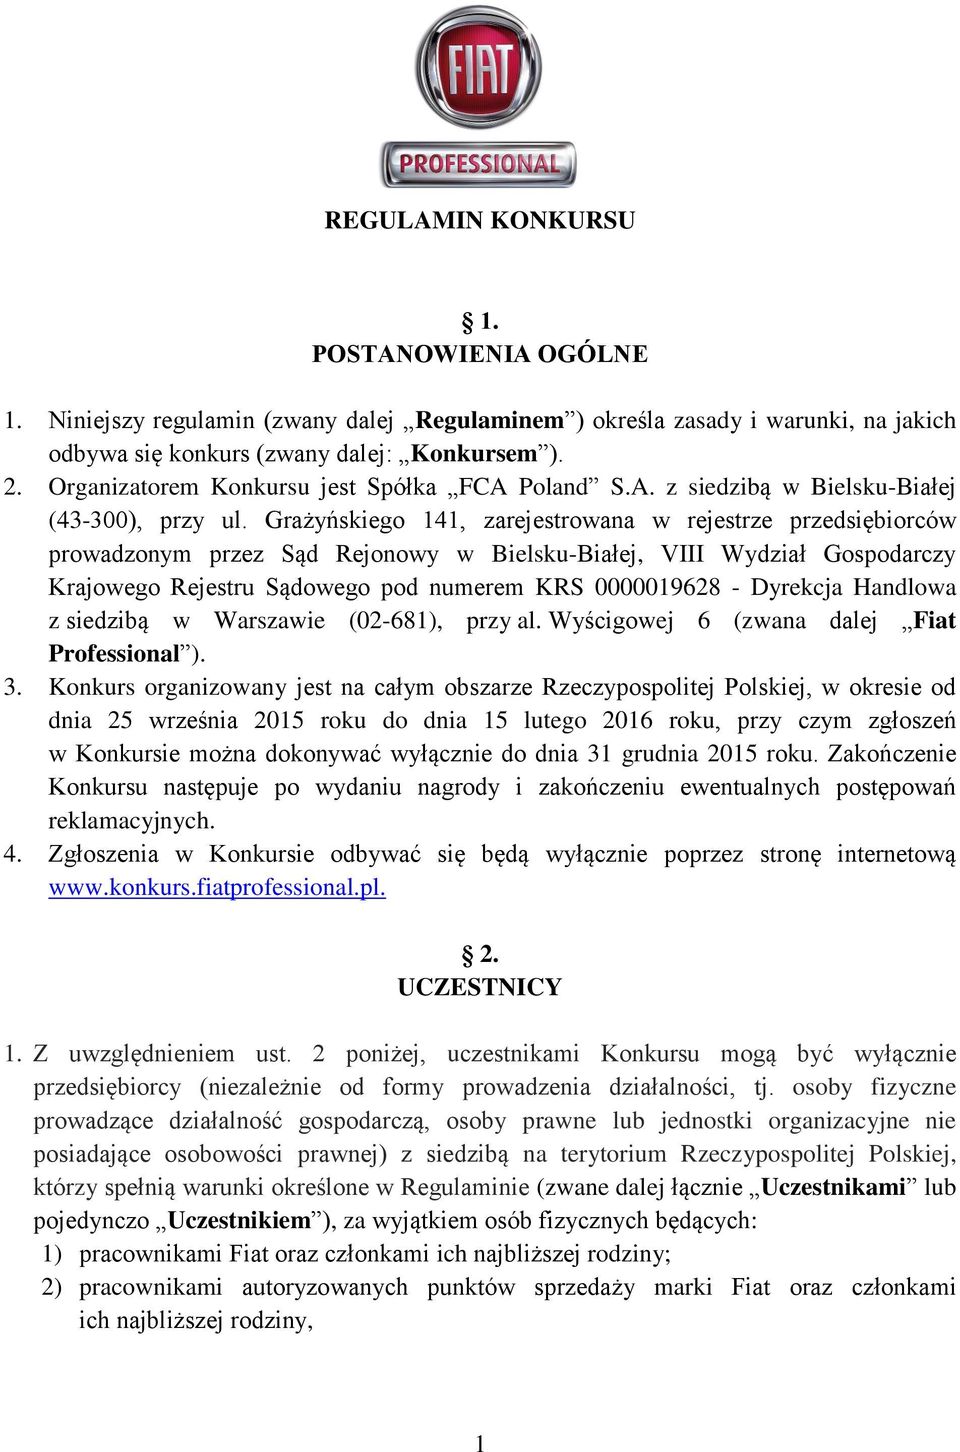 Grażyńskiego 141, zarejestrowana w rejestrze przedsiębiorców prowadzonym przez Sąd Rejonowy w Bielsku-Białej, VIII Wydział Gospodarczy Krajowego Rejestru Sądowego pod numerem KRS 0000019628 -